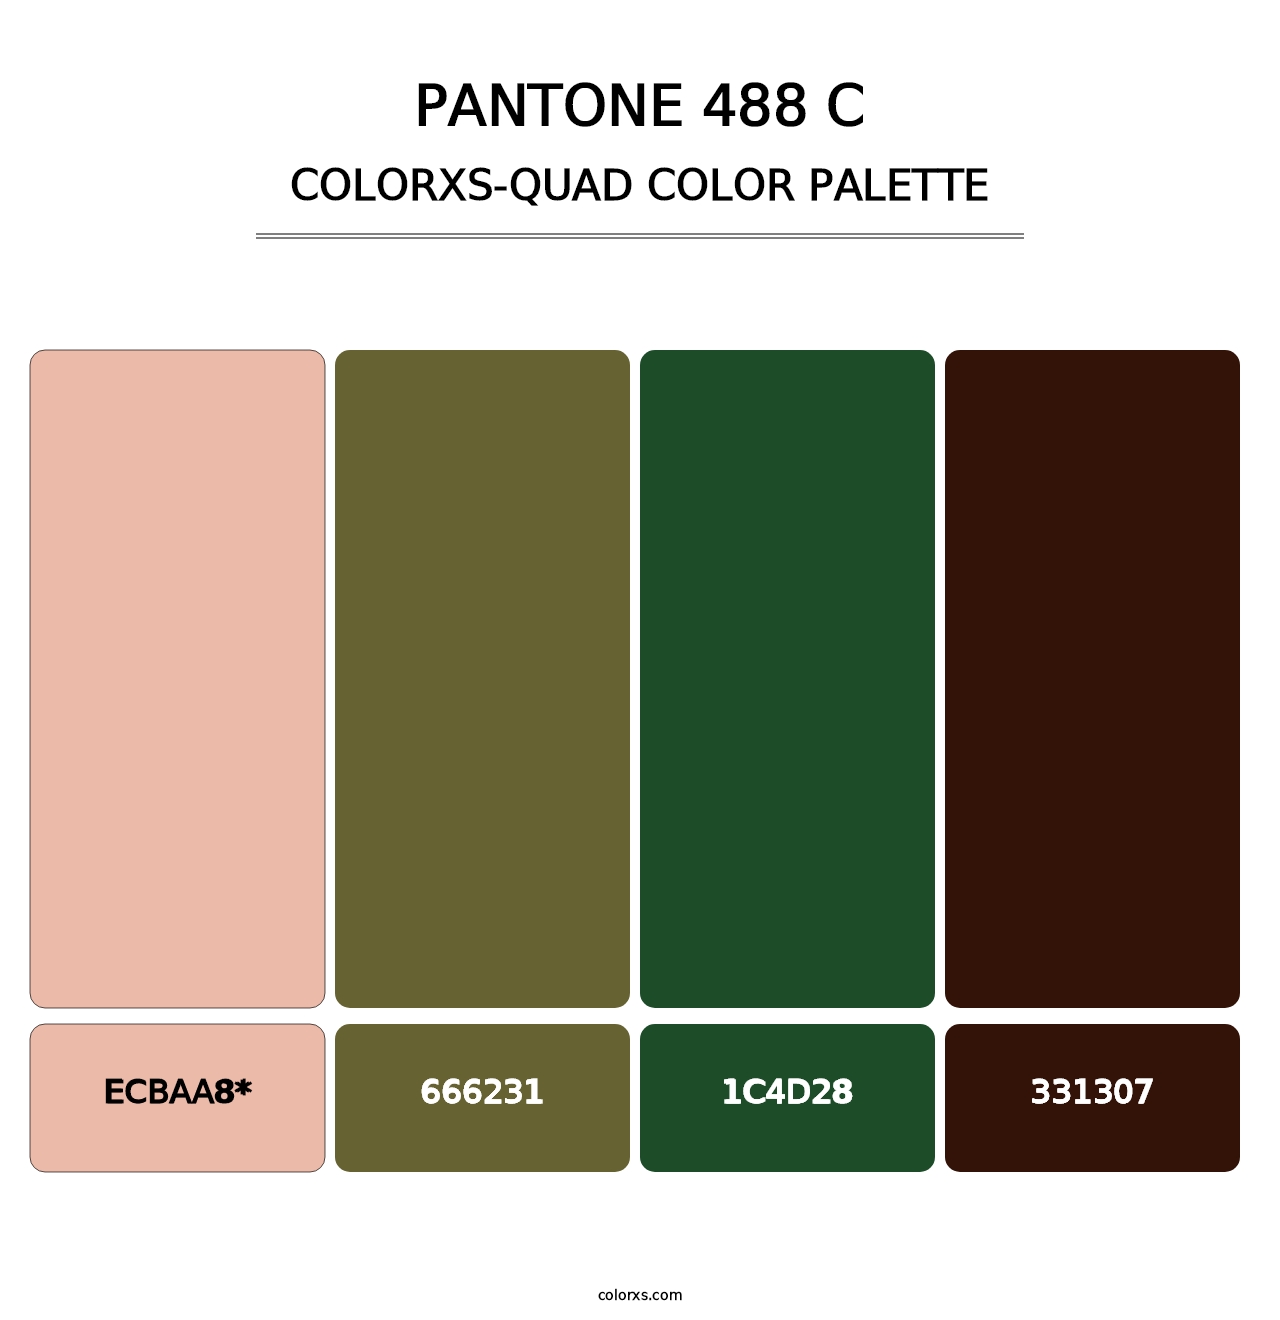 PANTONE 488 C - Colorxs Quad Palette